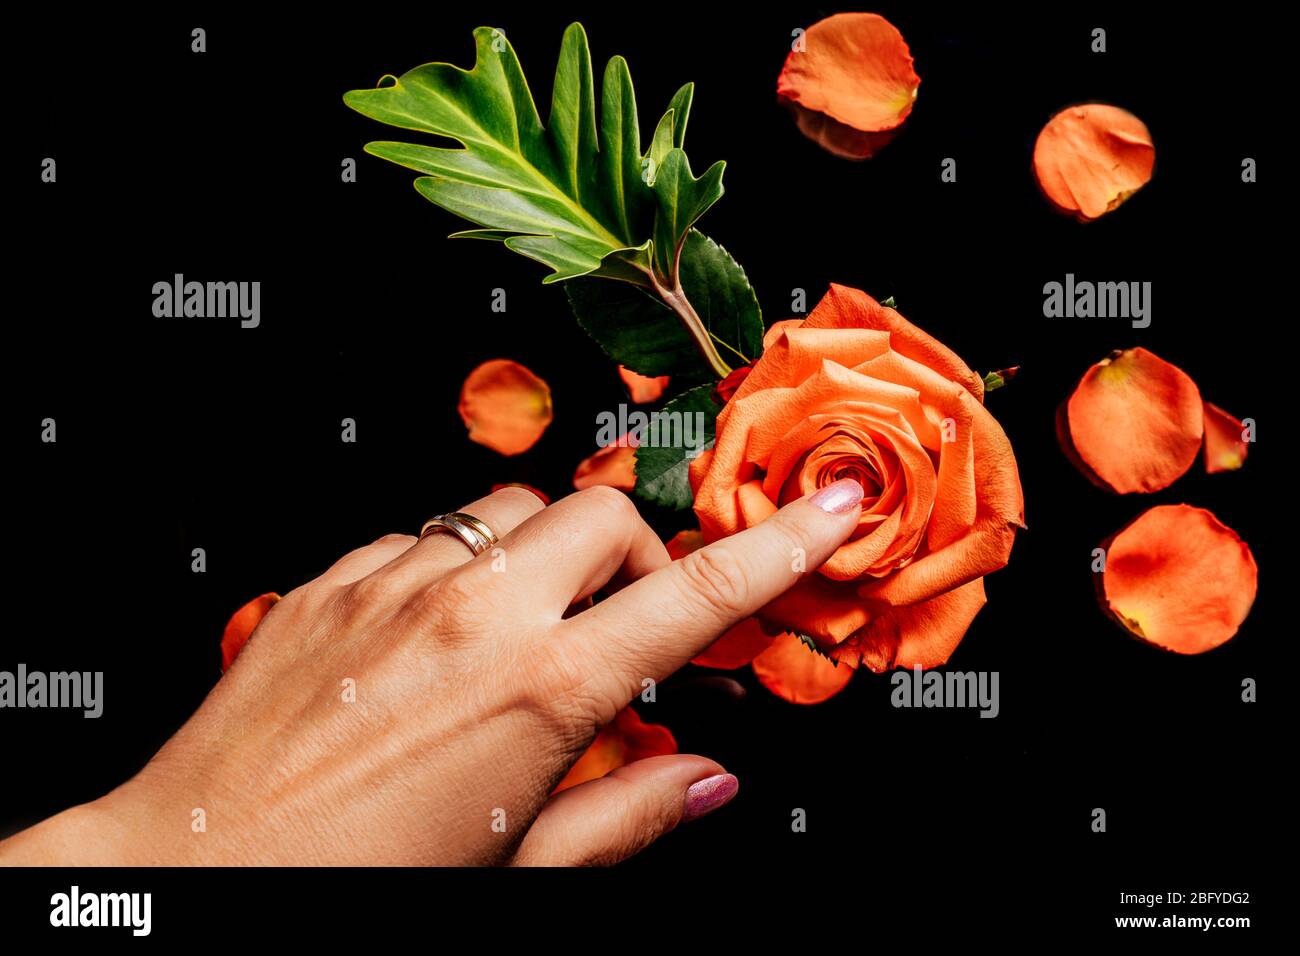 La main des femmes touche avec le doigt orange rose sur fond noir avec des pétales flous et laisse dessus, vue de dessus. Concept d'amour, de soin et de tendresse. Banque D'Images